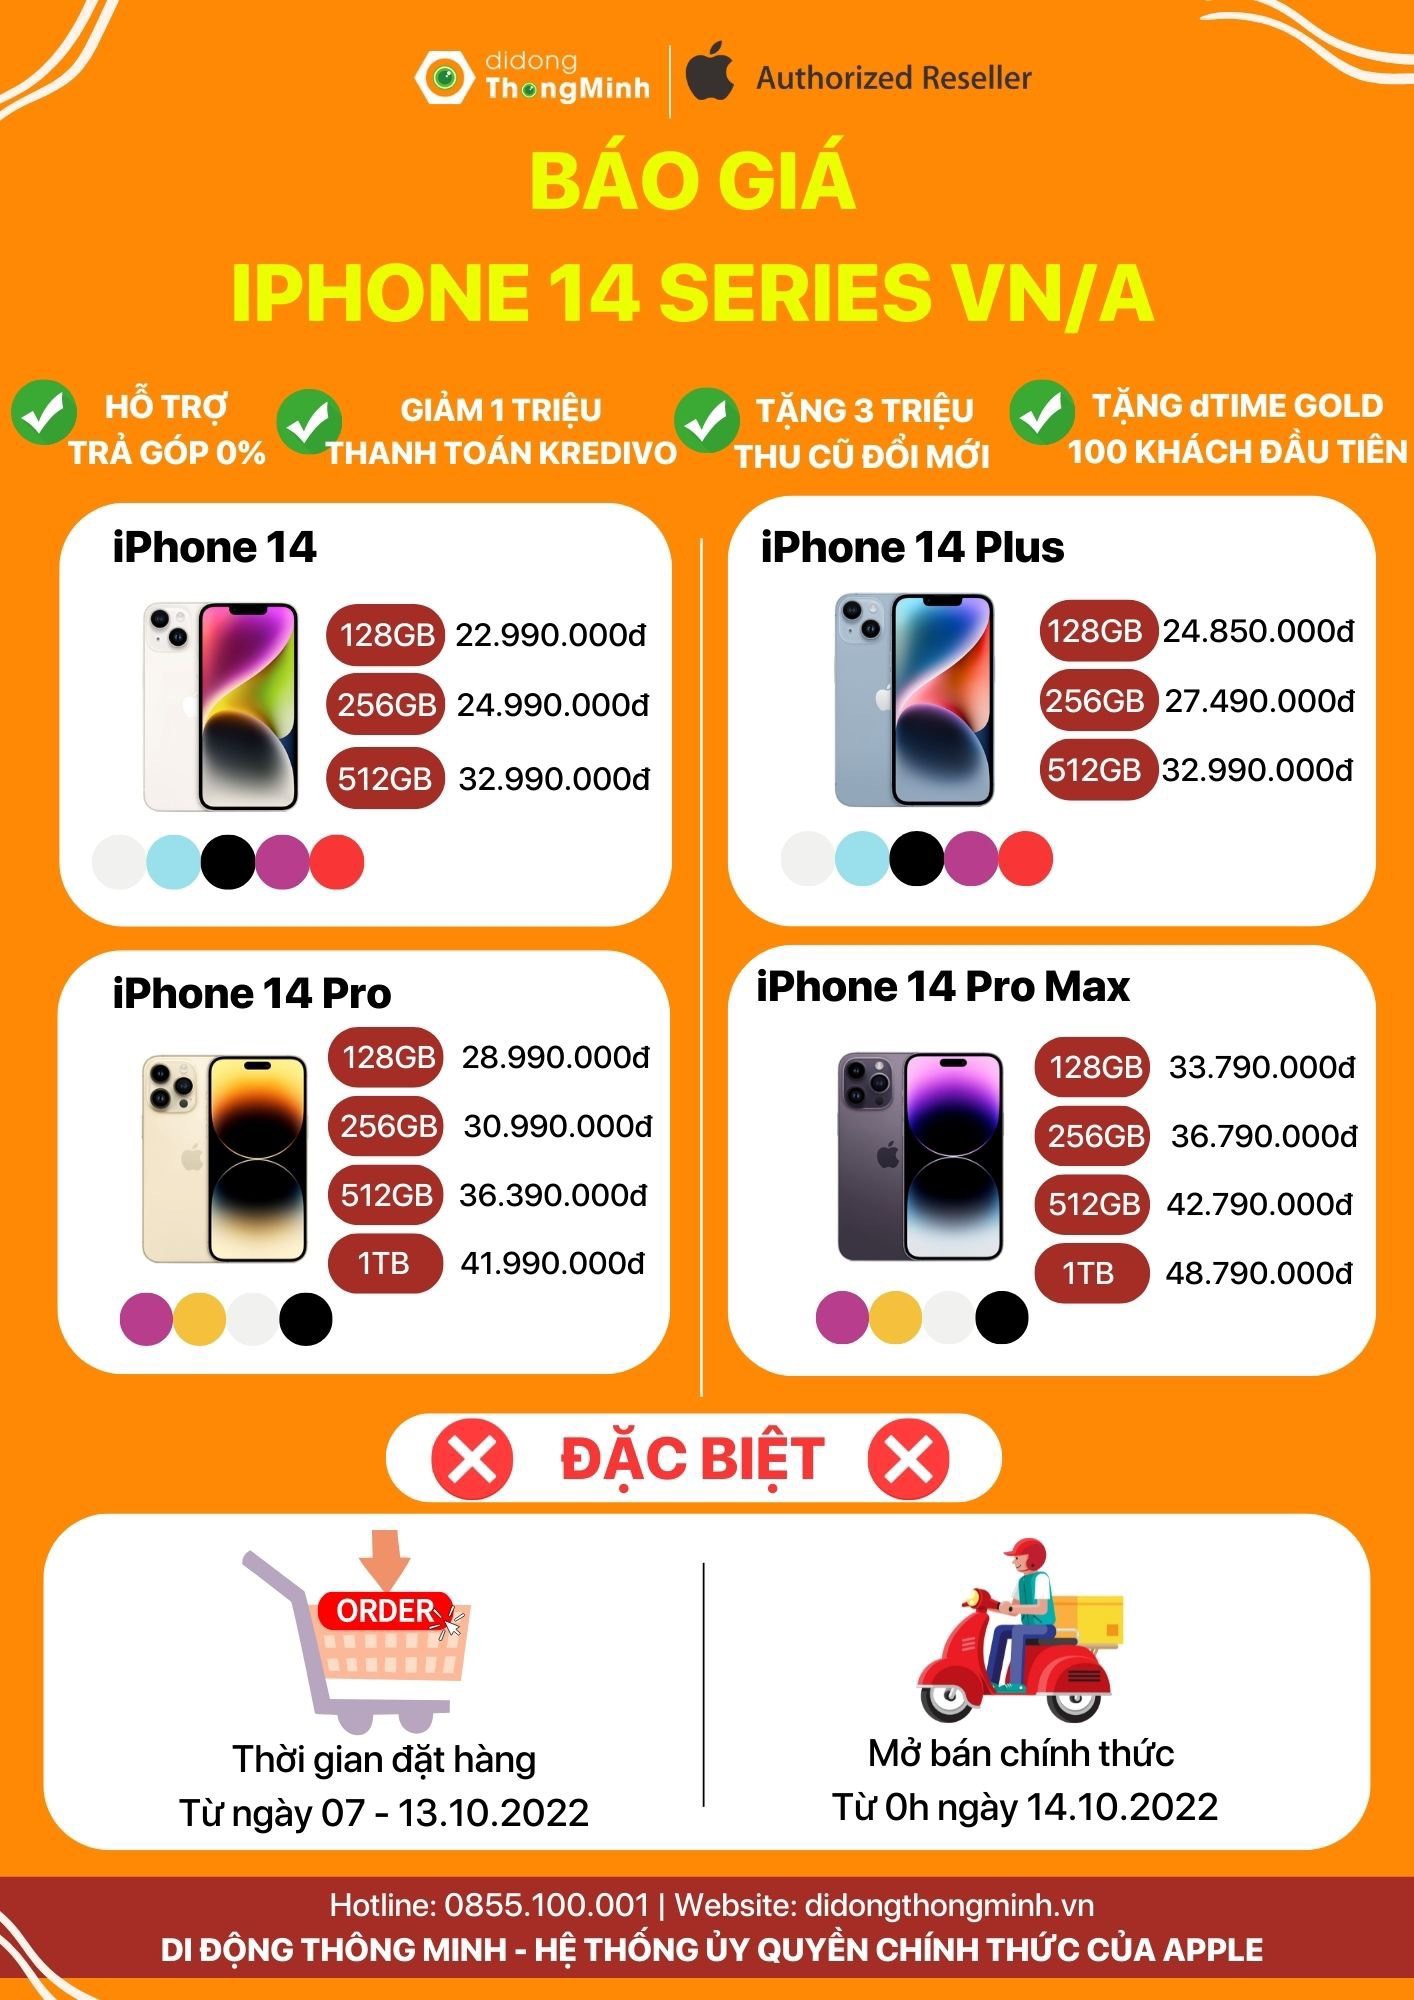 iPhone 14 Plus có mức giá cả phải chăng